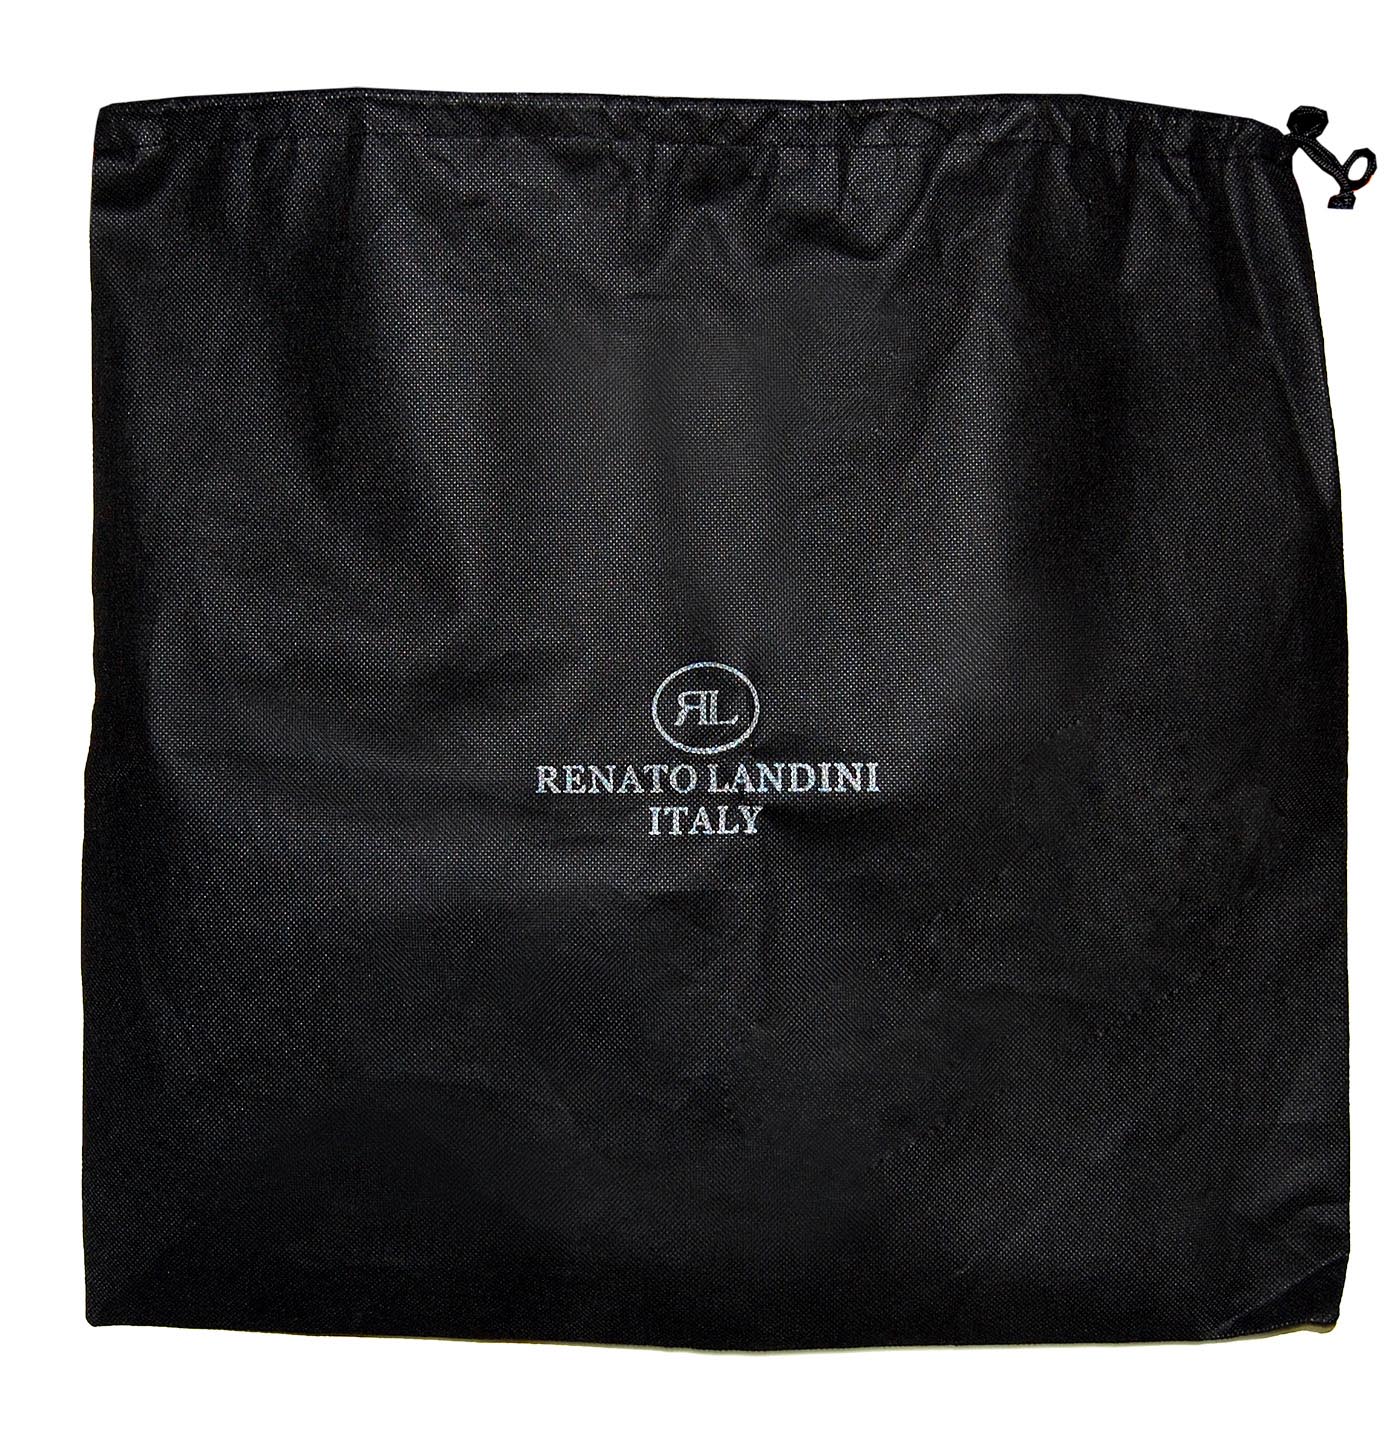 RENATO LANDINI Black Leather Bag/ Competition